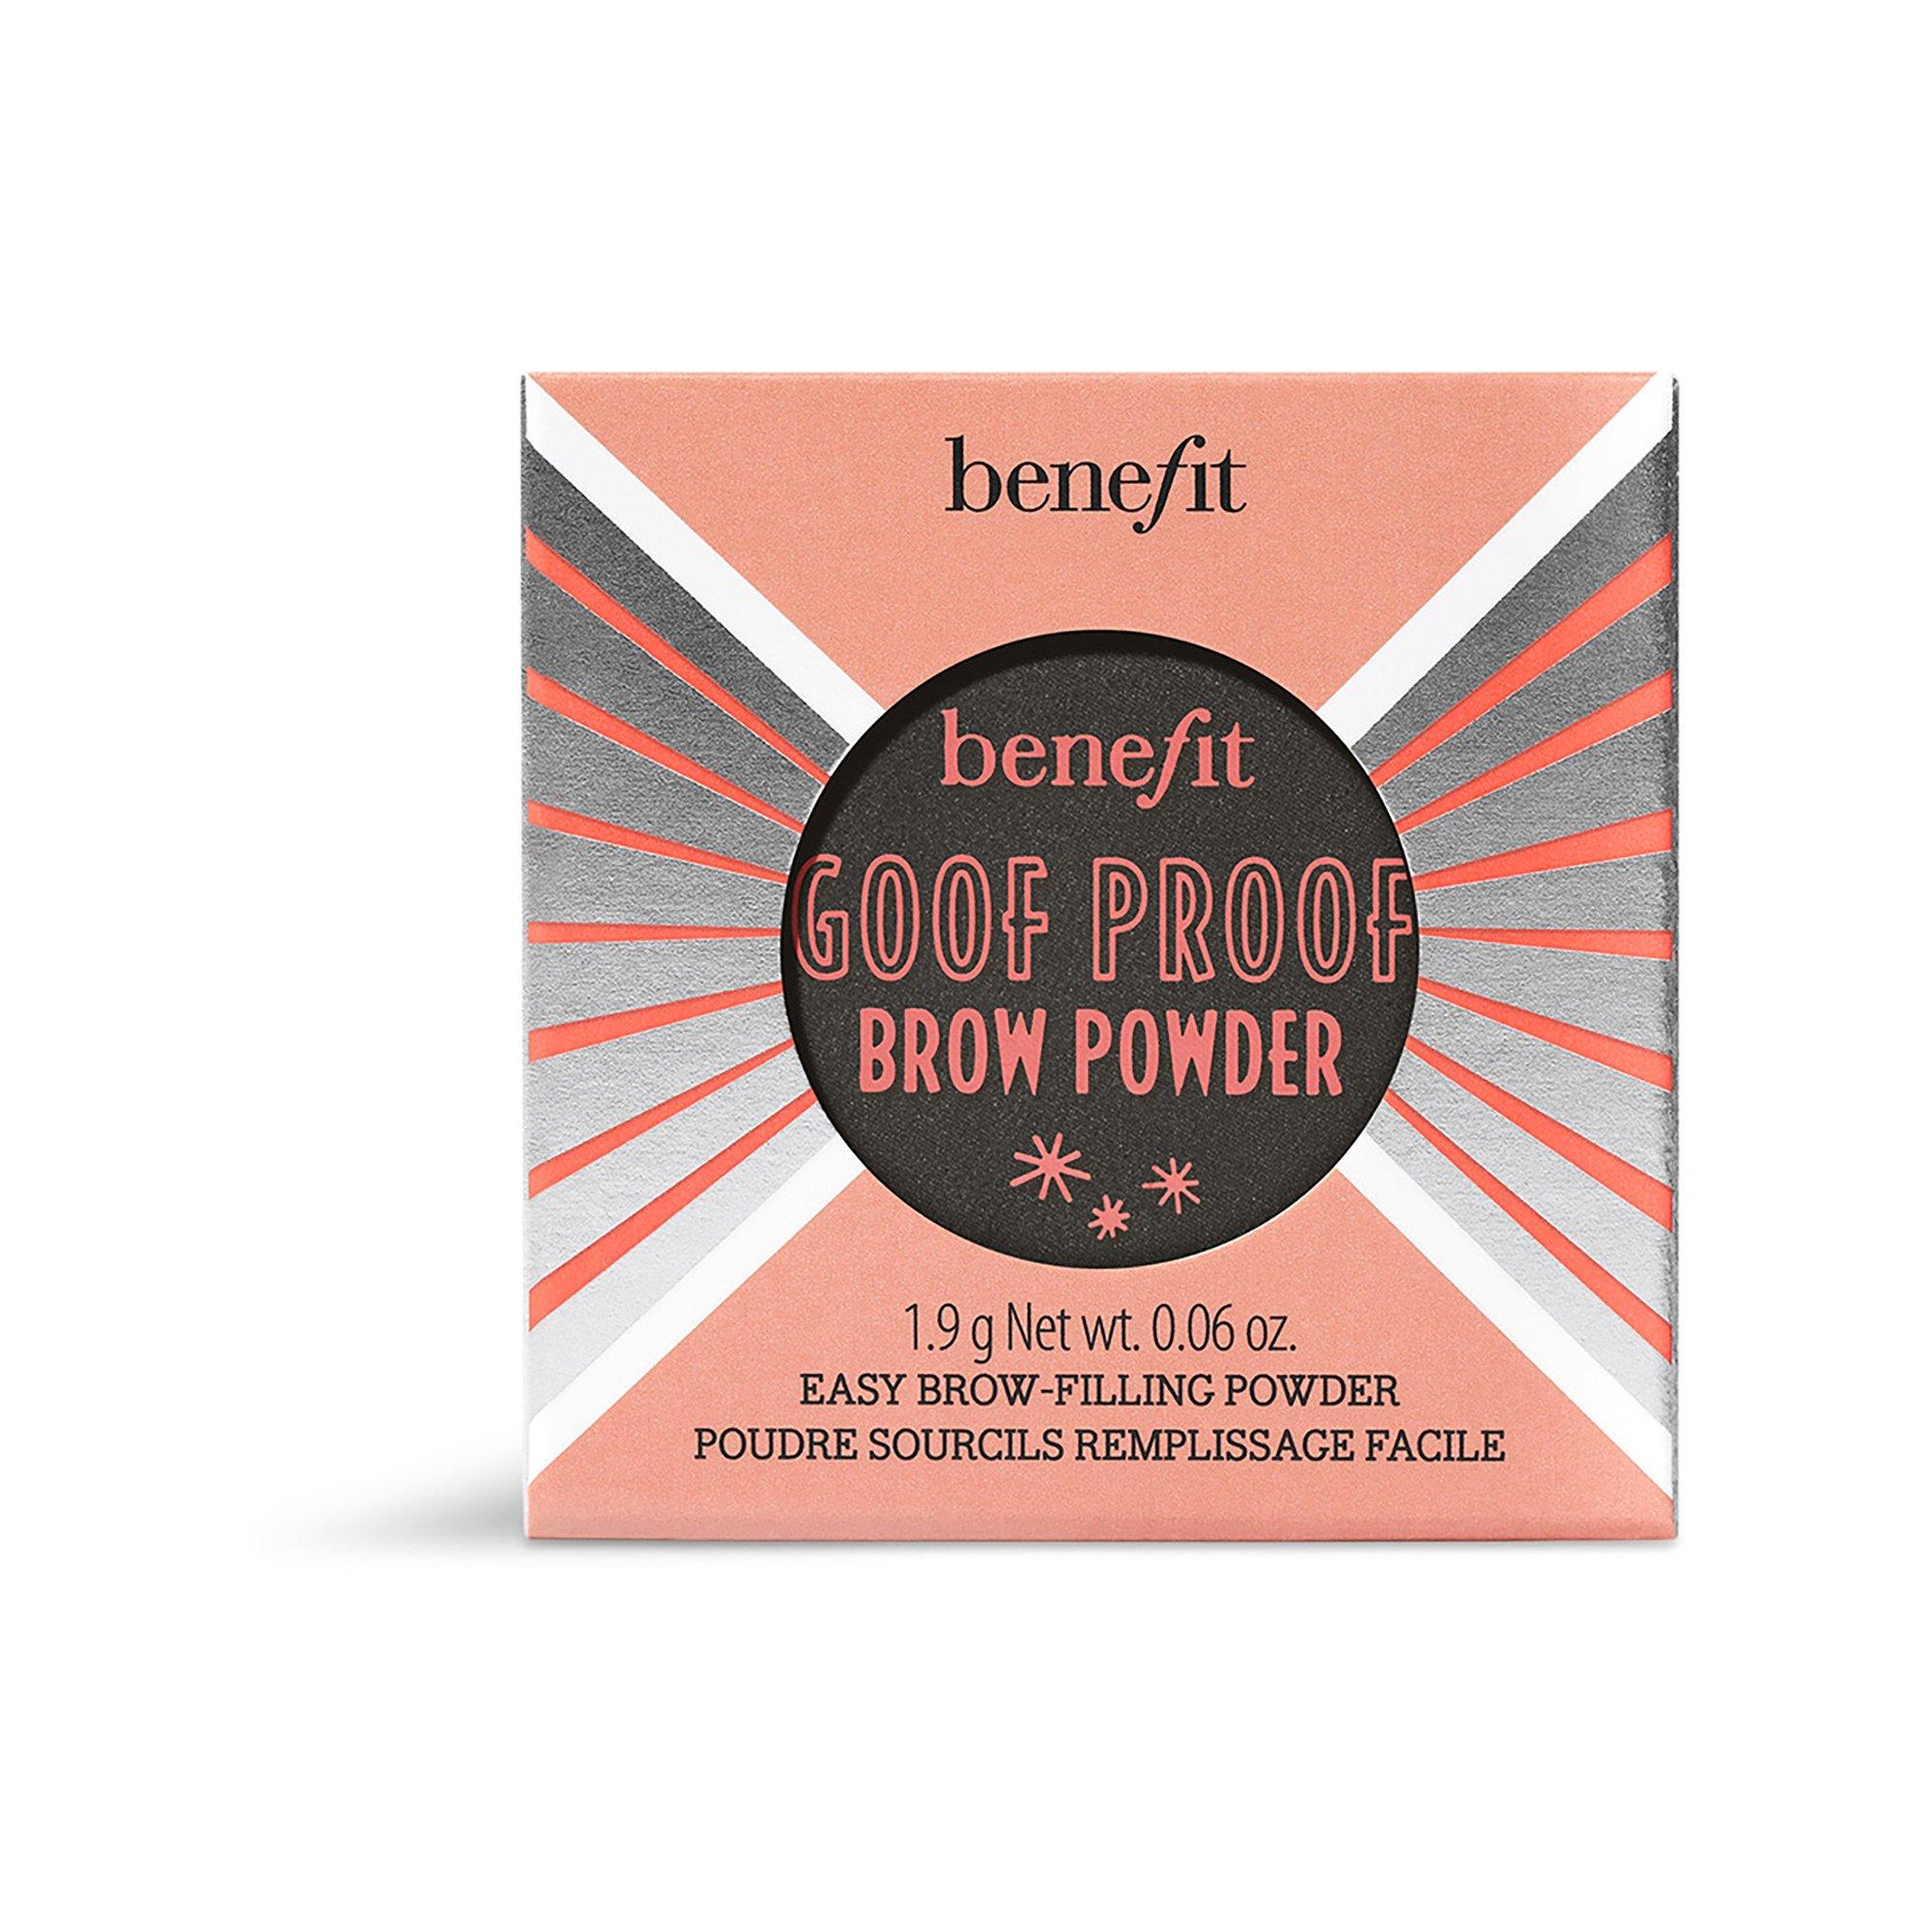 benefit  Goof Proof Brow Powder - Poudre sourcils remplissage facile 